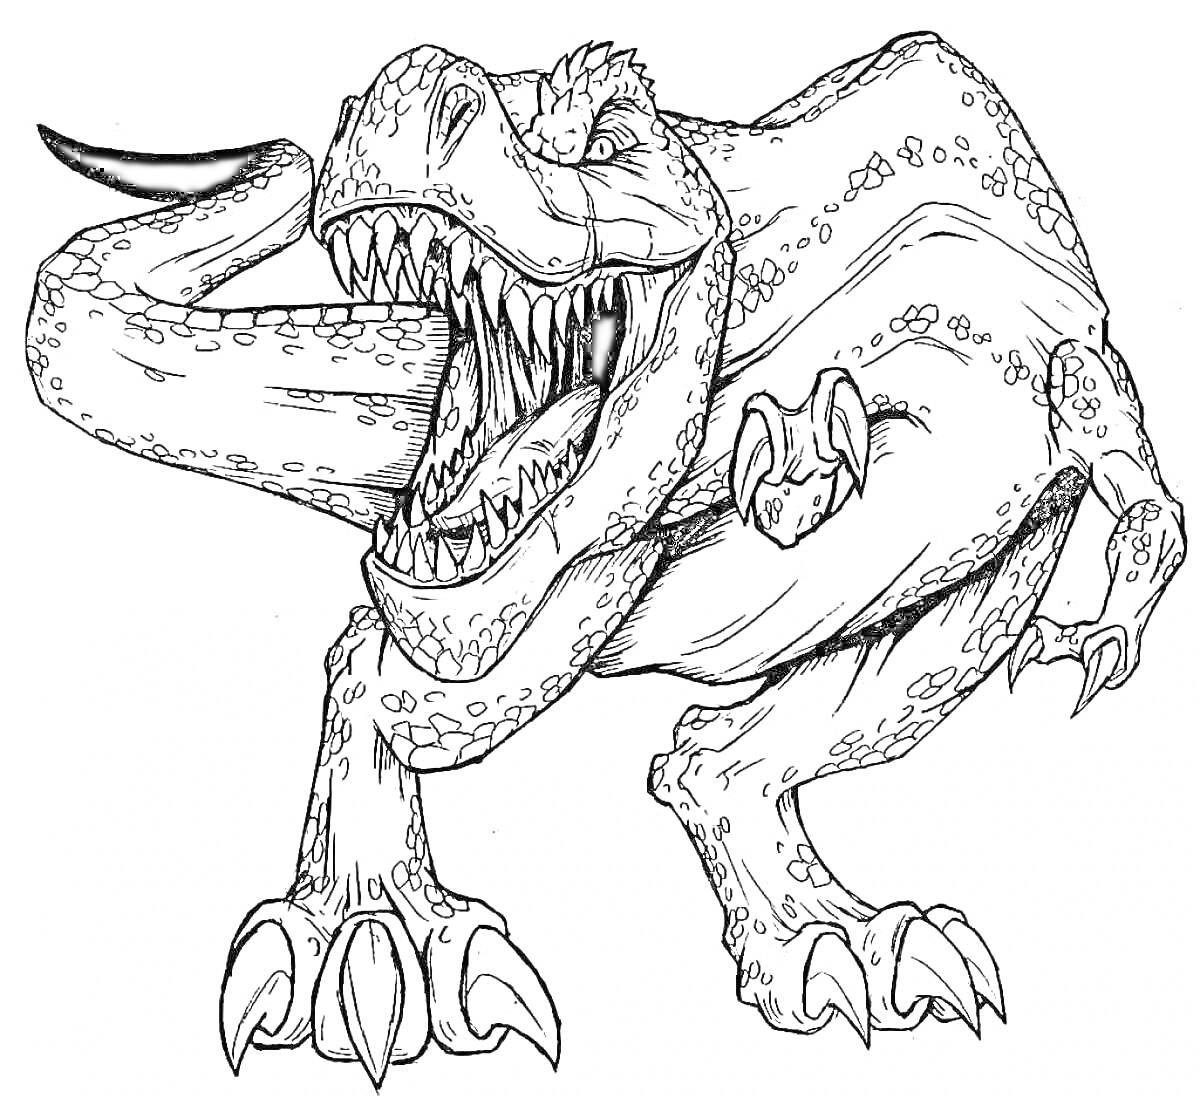 Раскраска Тираннозавр Рекс. Открытая пасть, острые зубы, короткие передние лапы, мощные задние лапы, когти.